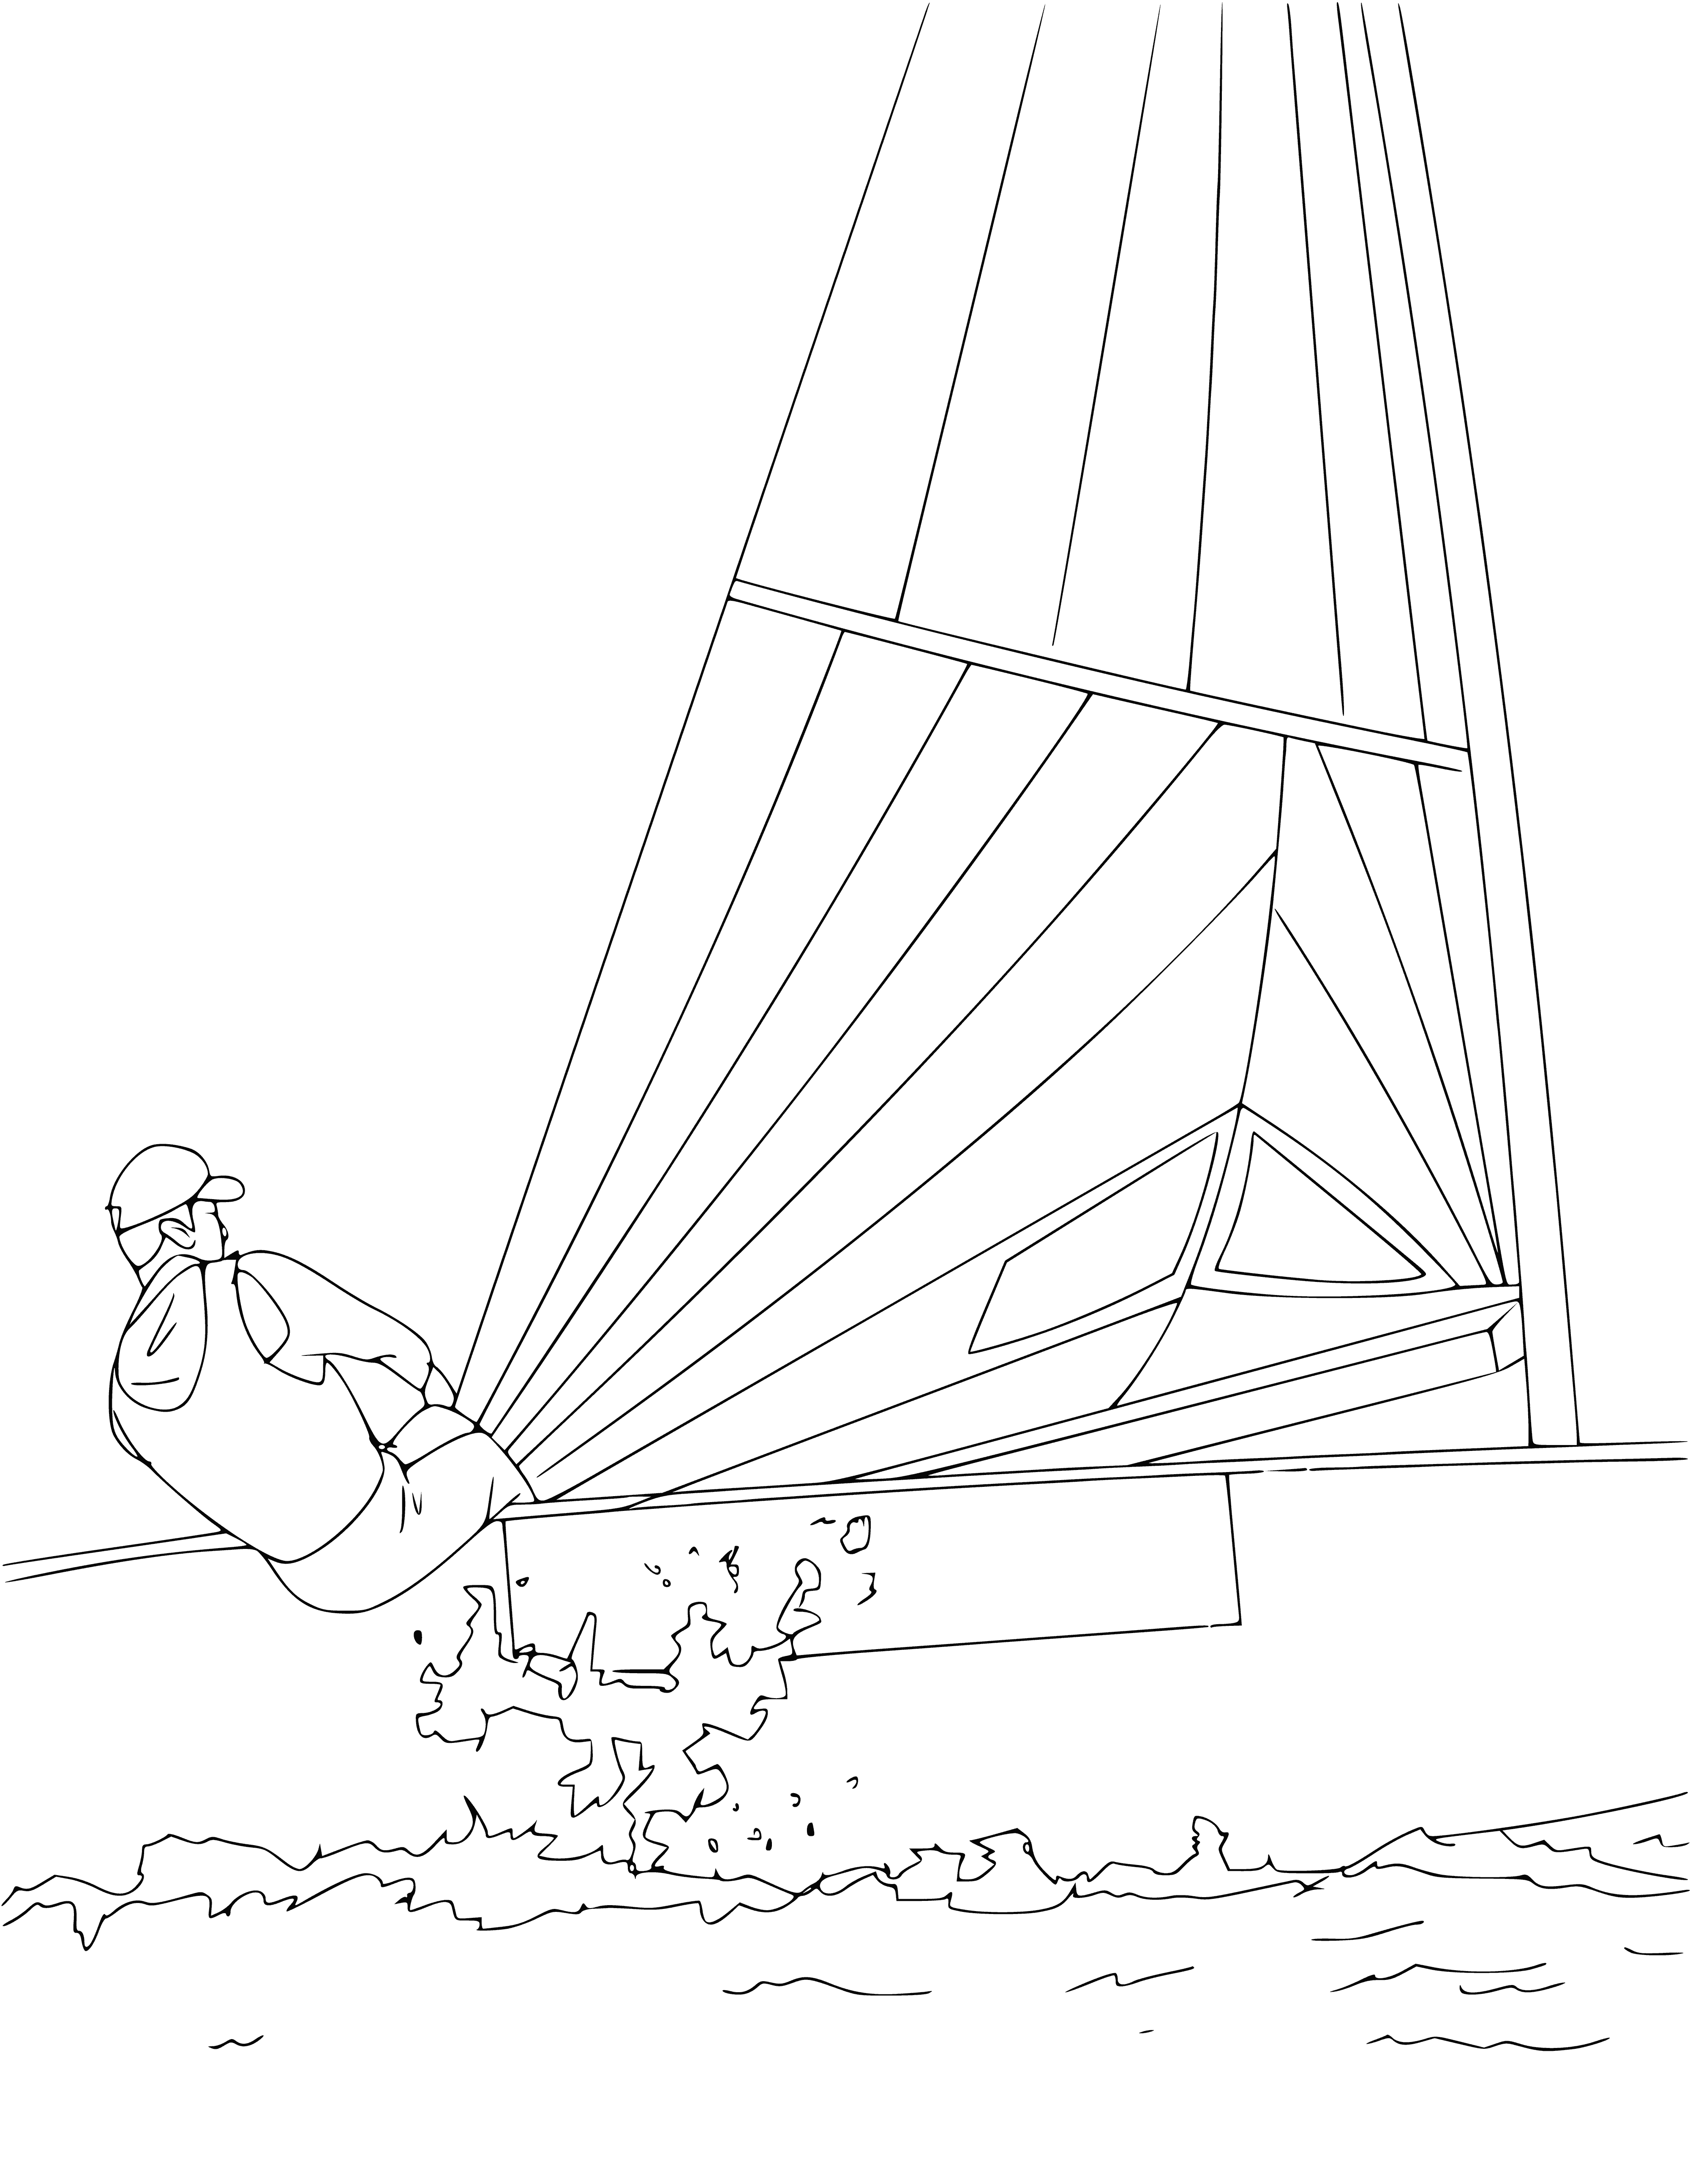 Sailing coloring page